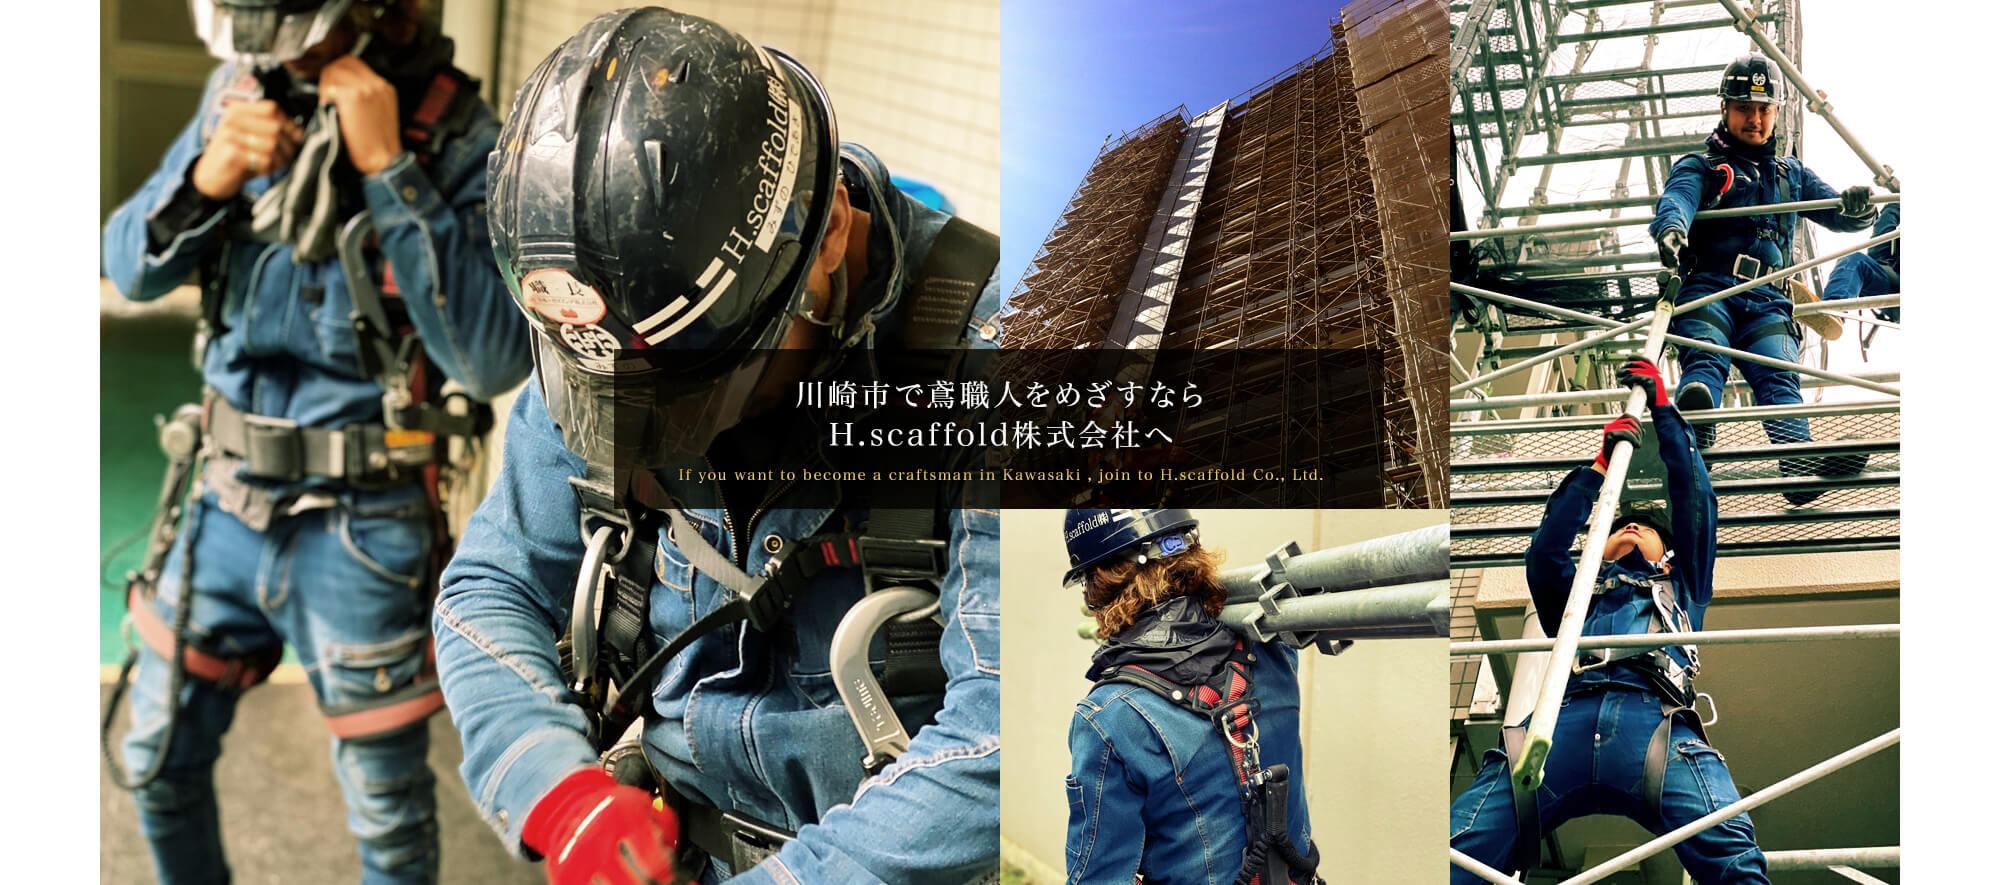 川崎市で鳶職人をめざすなら H.scaffold株式会社へ